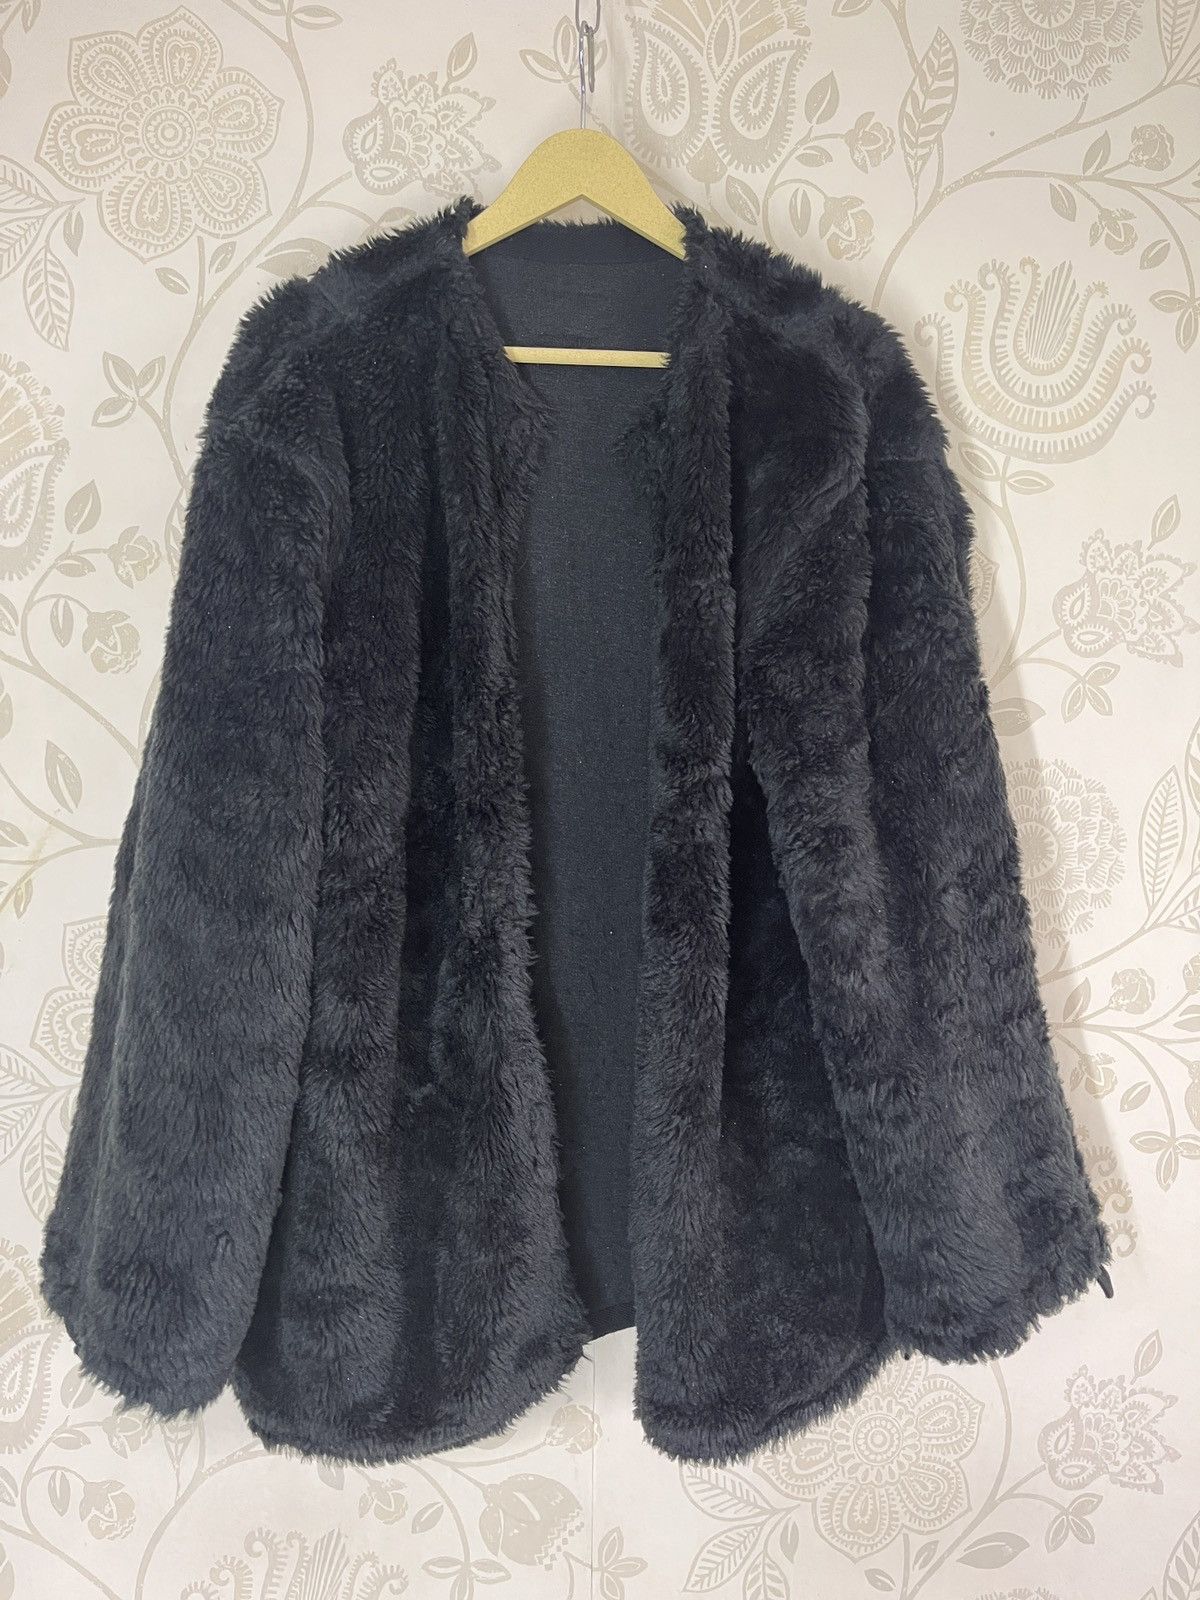 Vintage - Lux Style Black Fur PPFM Cloaks Capes - 1